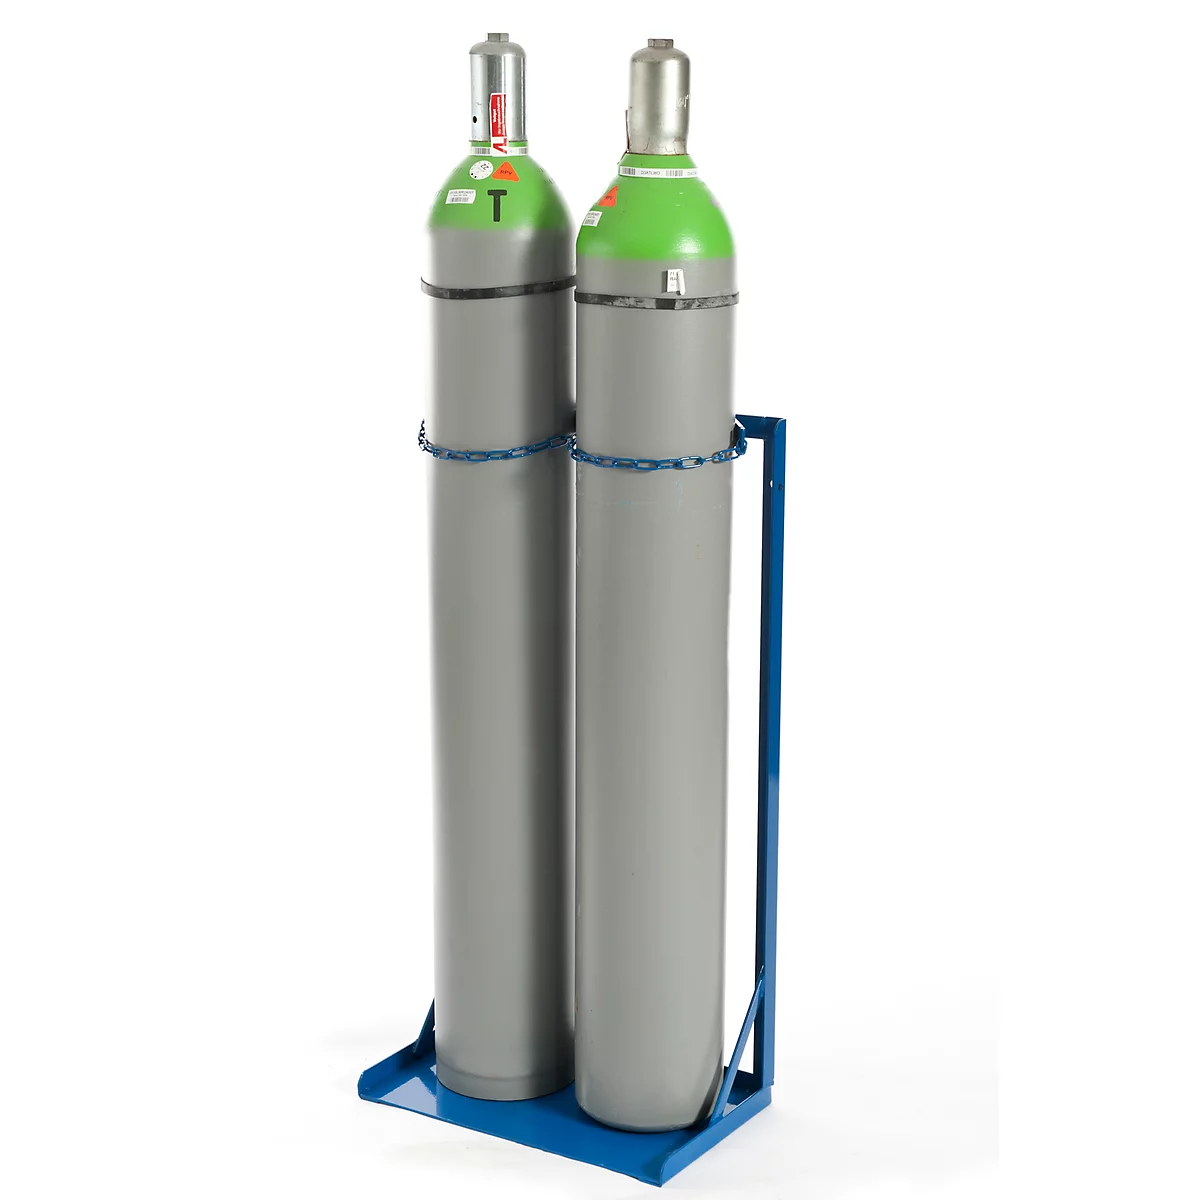 Gasflaschenständer Rollcart Transportsysteme, für 2 Flaschen mit Volumen 40-50 l & Ø 210-250 mm, bis 200 kg, Kettensicherung, Stahl, blau